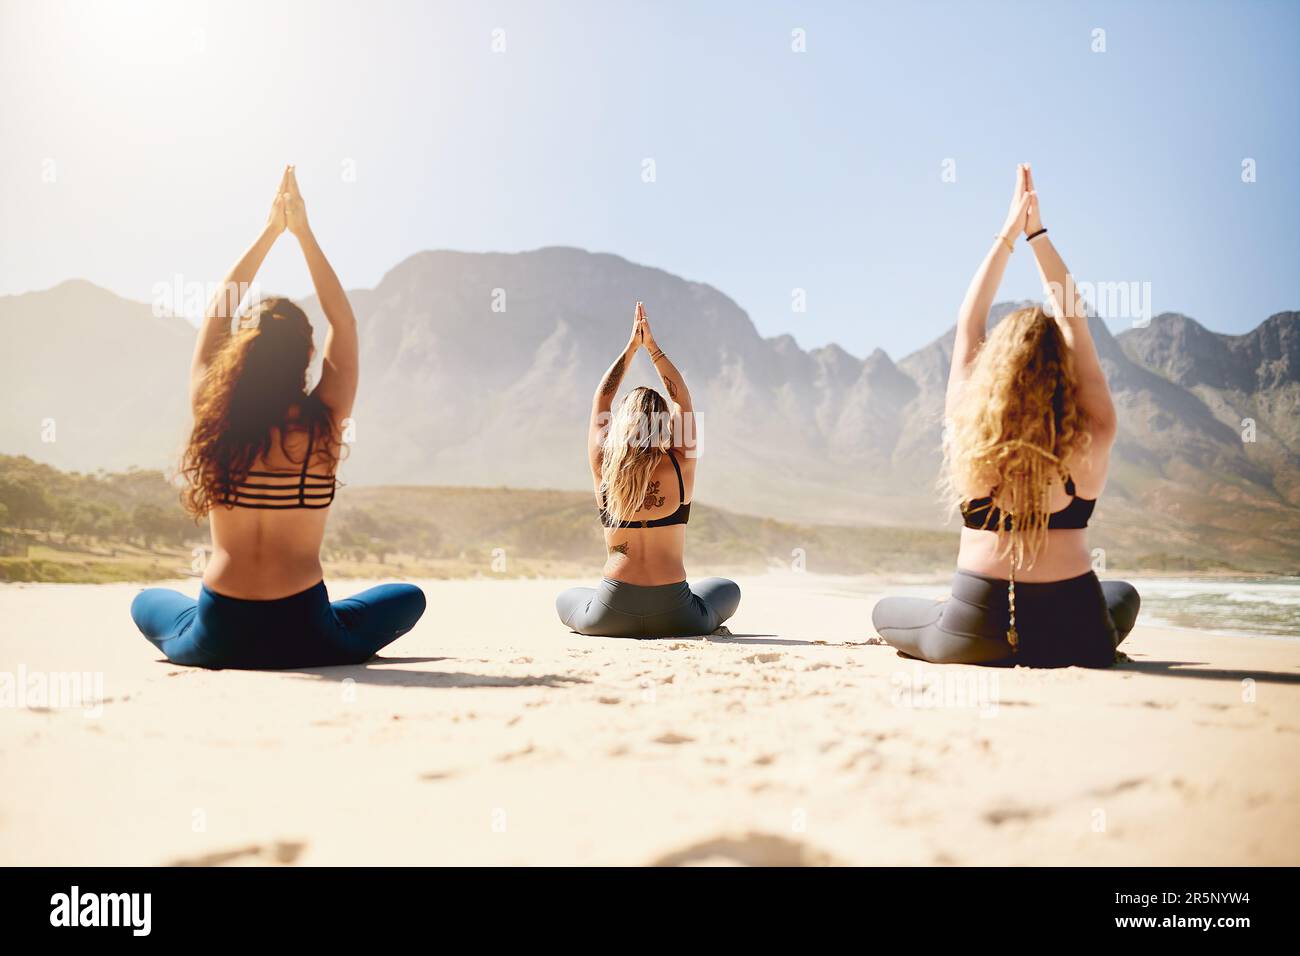 Étaient sur le chemin d'une vie plus paisible. Vue arrière de trois jeunes femmes pratiquant le yoga sur la plage. Banque D'Images